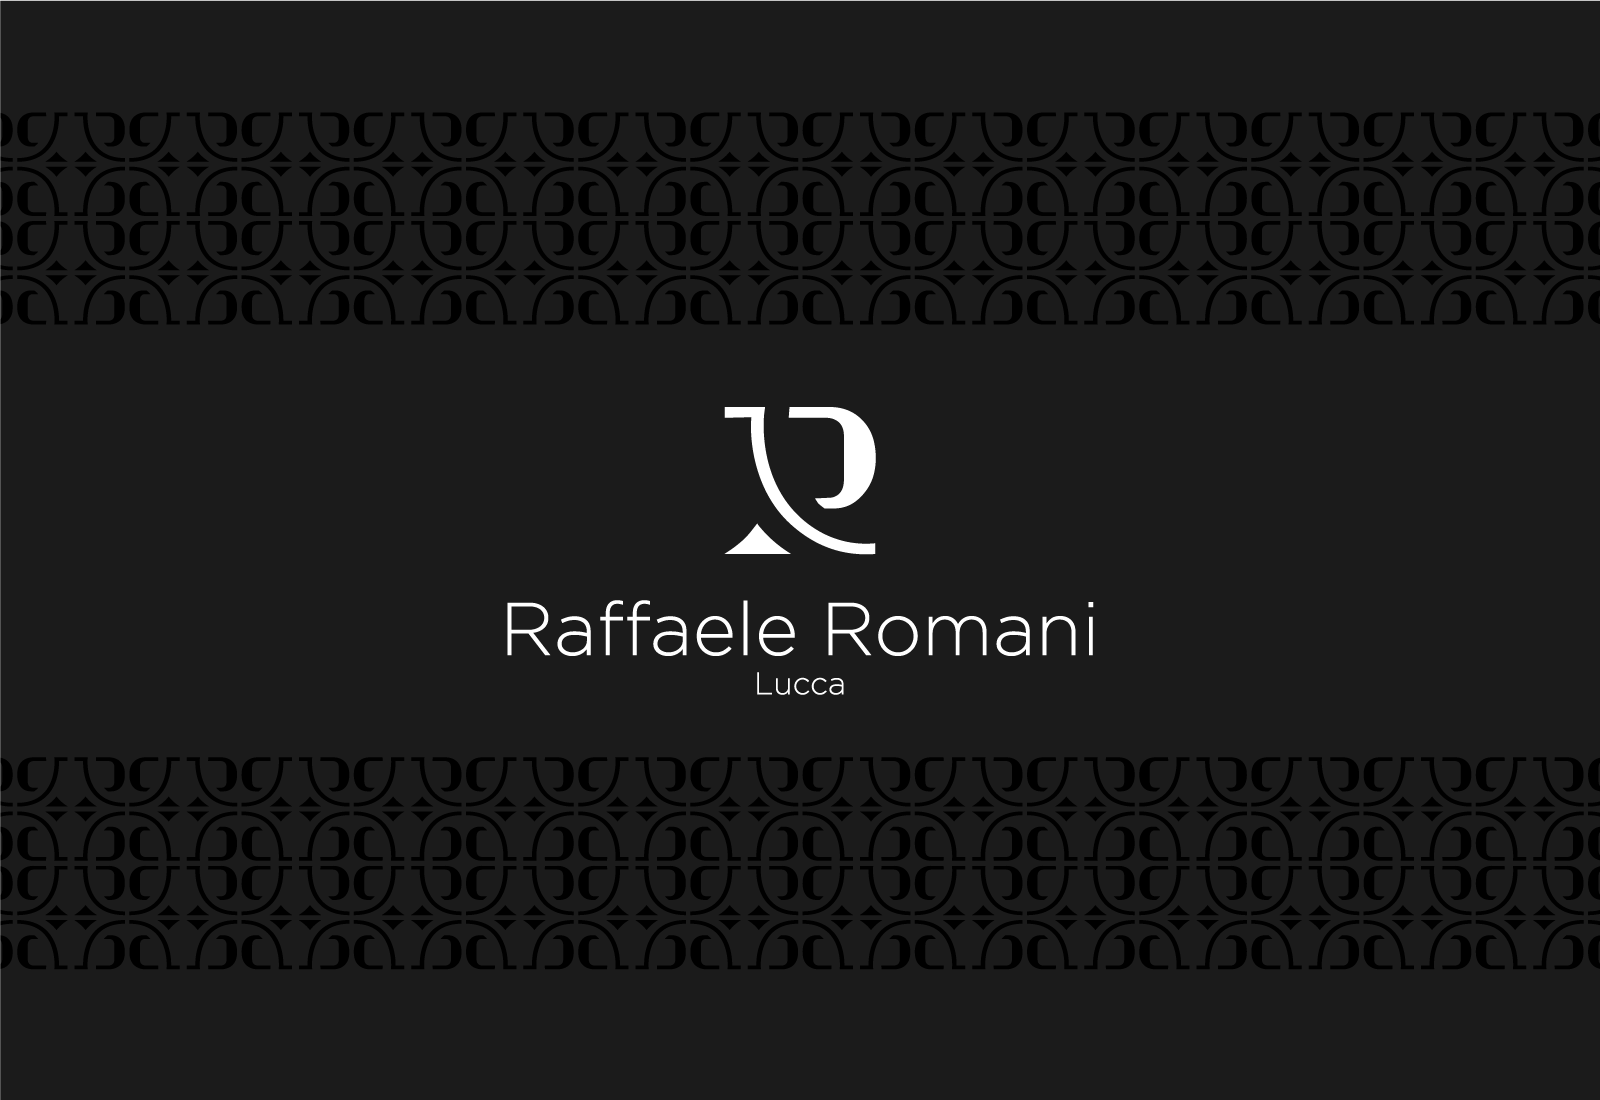 Logo e brand identity di Raffaele Romani realizzato da SEBA! grafico di Gravellona Toce nel VCO della versione negativa in bianco